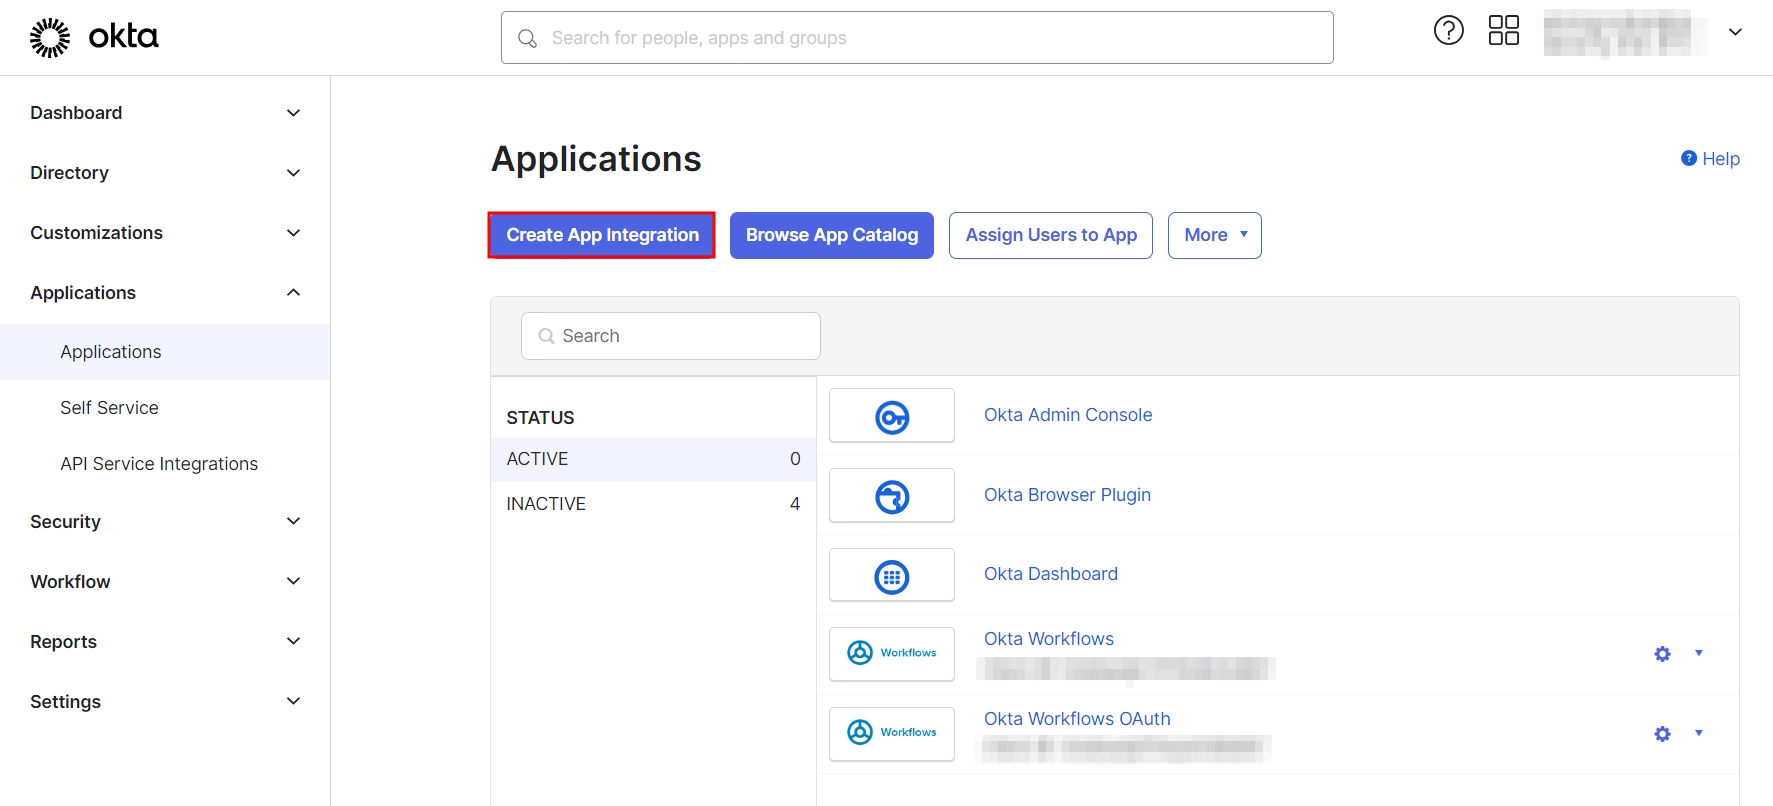 SAML Single Sign On (SSO) using Okta Identity Provider, Okta SSO Login,Add New Application into Okta